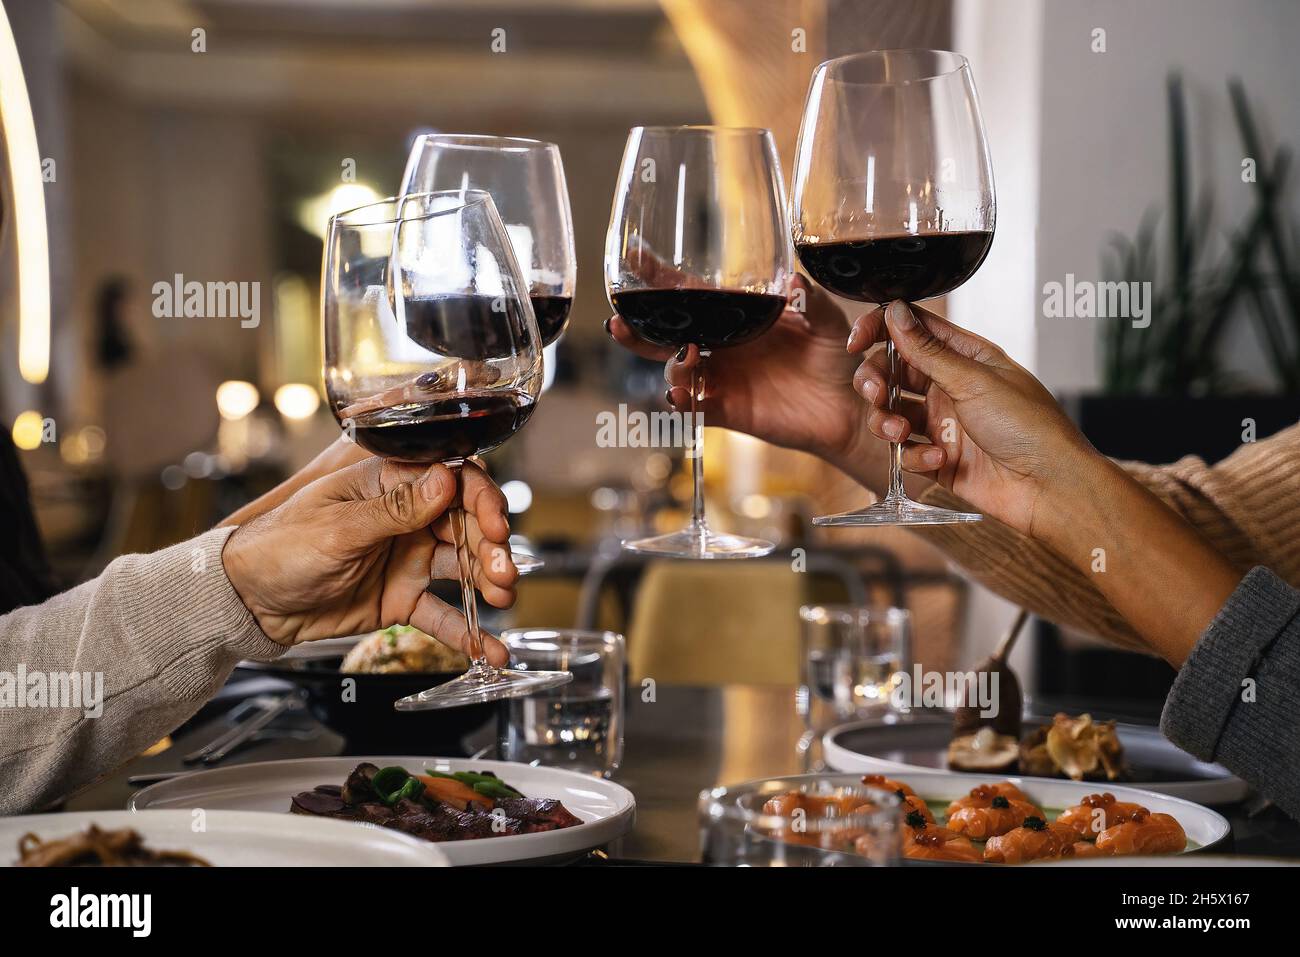 Nahaufnahme der Hände mit Gläsern beim Toasten von Rotwein im Restaurant - eine Gruppe von Freunden feiern klirrende Weingläser Stockfoto